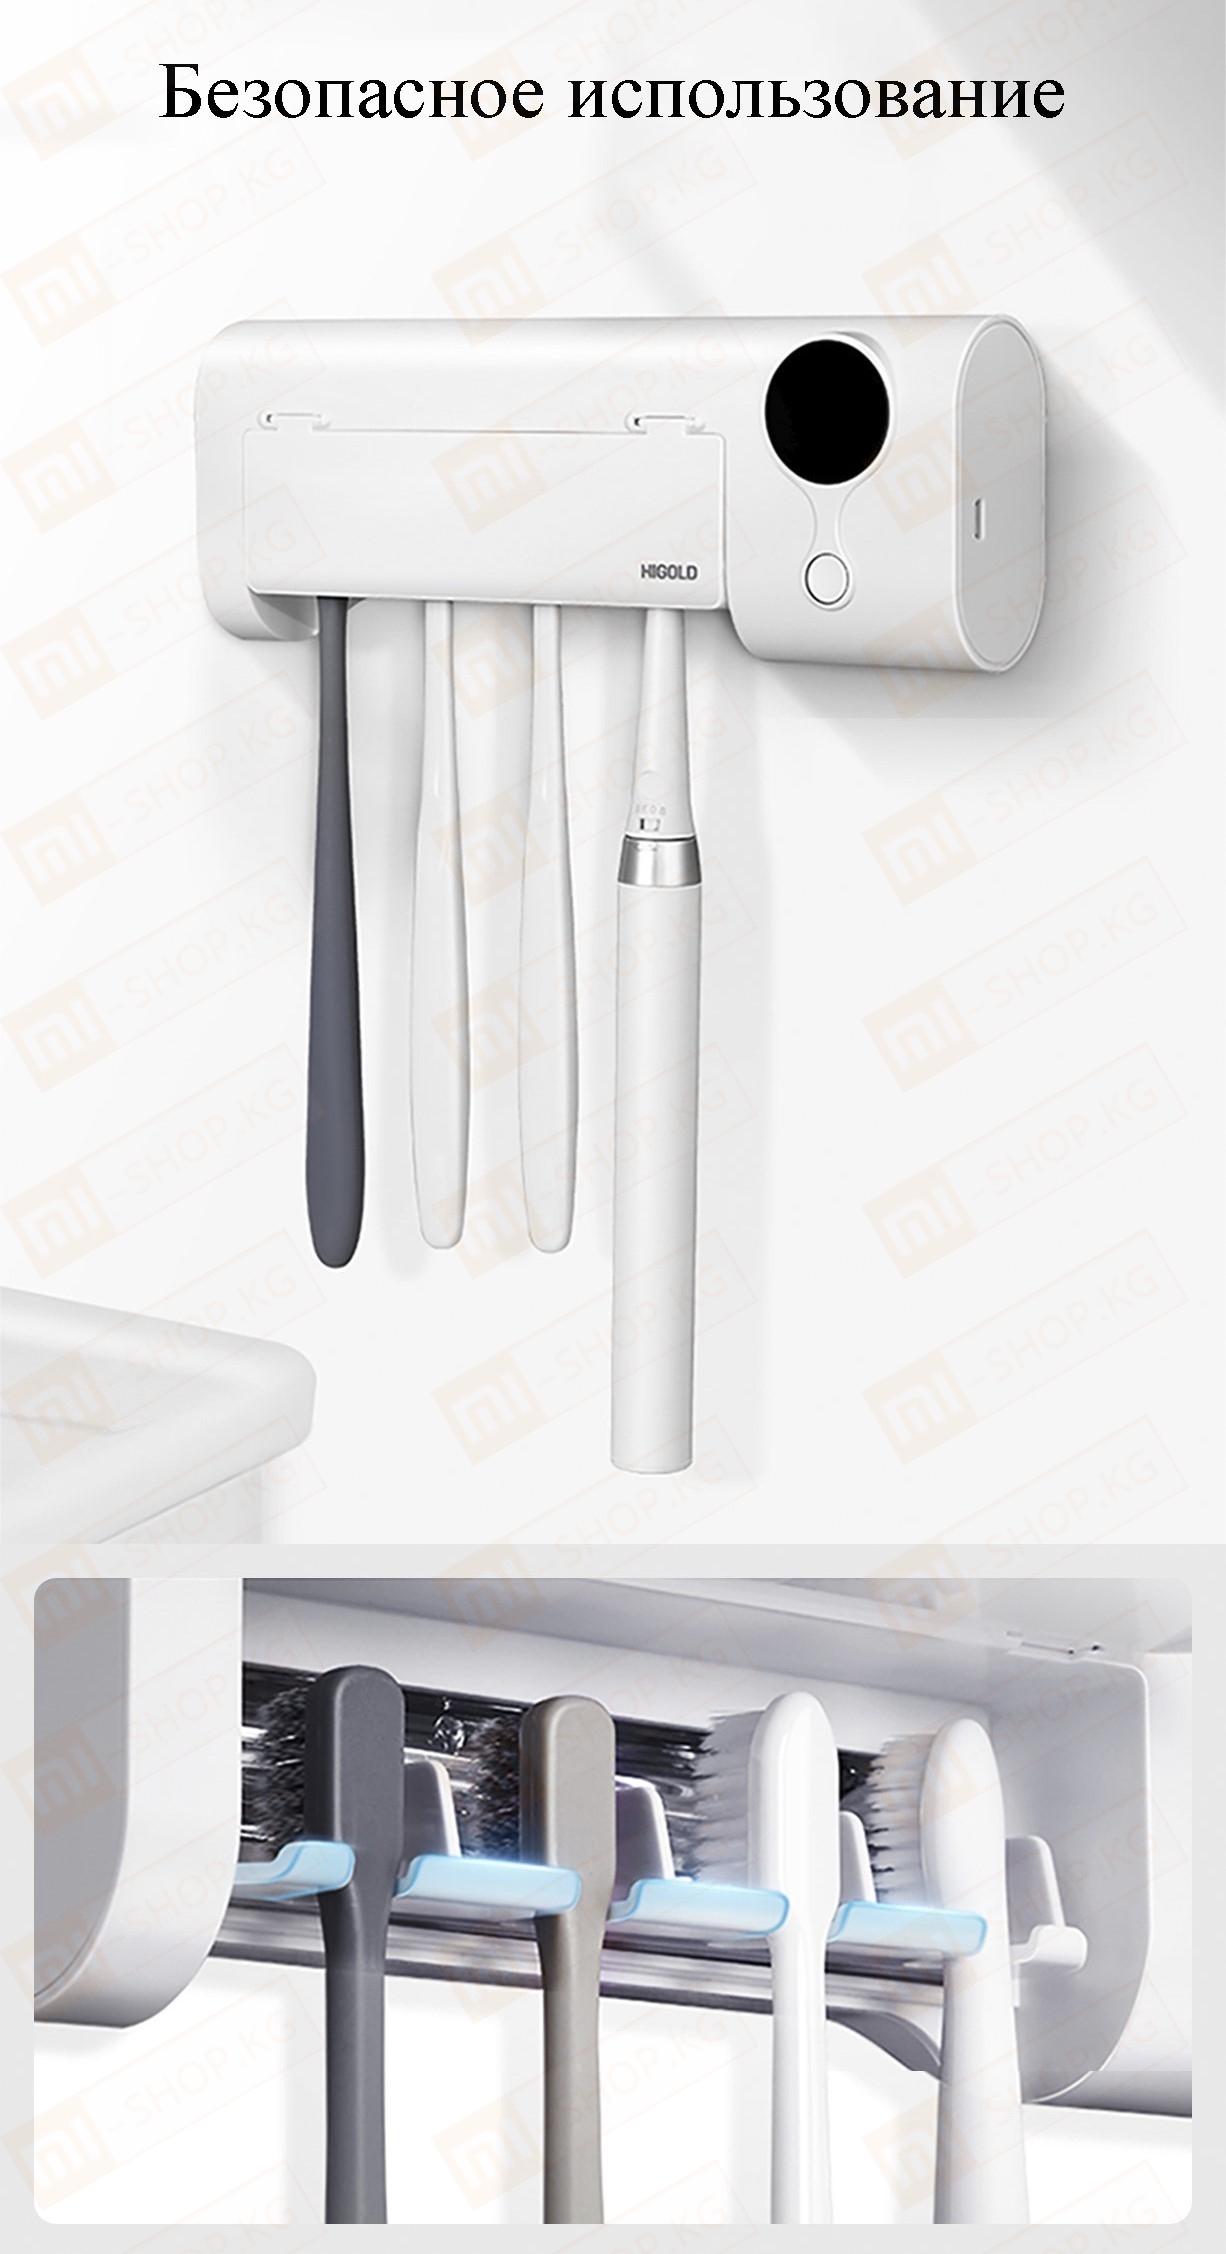 Умный дезинфицирующий держатель для зубных щеток Xiaomi HIGOLD Smart Disinfection Toothbrush Holder (601501) Это держатель для четырех зубных щеток с функцией ультрафиолетовой дезинфекции. В приборе используется фронтальное облучение в сочетании с отражением зеркального отделения для нанесения гальванических покрытий, что обеспечивает всестороннюю стерилизацию. Умный дезинфицирующий держатель для зубных щеток Xiaomi HIGOLD Smart Disinfection Toothbrush Holder (601501) Длительная стерилизация Для поддержания чистоты и гигиены зубной щётки нажмите на кнопку, чтобы включить режим стерилизации 360S длительностью до 6 минут, такая стерилизация не оставляет шансов для размножения бактерий. Нажмите на кнопку ещё раз , чтобы выключить стерилизацию. Умный дезинфицирующий держатель для зубных щеток Xiaomi HIGOLD Smart Disinfection Toothbrush Holder (601501) Всесторонняя стерилизация Умный дезинфицирующий держатель для зубных щеток Xiaomi HIGOLD Smart Disinfection Toothbrush Holder (601501) использует фронтально облучение ультрафиолетовыми лучами в сочетании с отражающим эффектом зеркальной гальванической камеры, для достижения всесторонней стерилизации зубных щёток, не оставляя ни единого шанса для размножения бактерий. Умный дезинфицирующий держатель для зубных щеток Xiaomi HIGOLD Smart Disinfection Toothbrush Holder (601501) Высокоэффективная ультрафиолетовая стерилизация Уничтожают 99,99% бактерий Высокоэффективная ультрафиолетовая стерилизация UVC сделает зубные щетки как новые каждый день. Используется ультрафиолетовый свет с длиной волны 253,7 мм. При его облучении разрушается ДНК микроорганизмов, так что они не смогут размножаться и погибнут. Уровень эффективности UVC достигает 99%. Умный дезинфицирующий держатель для зубных щеток Xiaomi HIGOLD Smart Disinfection Toothbrush Holder (601501) Безопасное использование Держатель спроектирован под четыре слота для зубных щеток. Расстояние между щетками достаточное, чтобы они не соприкасались, что позволит избежать дополнительного размножения бактерий. Устройство обладает системой защиты. Если во время дезинфекции открыть крышку, то машина автоматически прекратит работу и отключит ультрафиолетовое излучение. Когда крышка открыта, то вместо таймера начинает мигать слово OPN (от слова «Open» — открыто). После закрытия крышки, надпись меняется на таймер, и устройство продолжит дезинфекцию. Умный дезинфицирующий держатель для зубных щеток Xiaomi HIGOLD Smart Disinfection Toothbrush Holder (601501) Автономная работа и зарядка Держатель оснащён встроенным аккумулятором емкостью 1500 мАч, которого хватает примерно на 20 дней автономной работы. Зарядка осуществляется через порт Micro USB и до полного заряда аккумулятора потребуется 5 часов. Умный дезинфицирующий держатель для зубных щеток Xiaomi HIGOLD Smart Disinfection Toothbrush Holder (601501) Лёгкая чистка Подставка для зубных щеток может быть снята и очищена отдельно от всей конструкции. Умный дезинфицирующий держатель для зубных щеток Xiaomi HIGOLD Smart Disinfection Toothbrush Holder (601501) Установка без перфорации Монтаж не оставляет следов, подходит для любой стены Прочная наклейка 3M устойчиво фиксируется на стене. Гнездо для съемного держателя зубной щетки* легко снимается для очистки. Когда требуется зарядка, можно легко и безопасно снять стерилизатор с наклейки на стене. Умный дезинфицирующий держатель для зубных щеток Xiaomi HIGOLD Smart Disinfection Toothbrush Holder (601501) Умный дезинфицирующий держатель для зубных щеток Xiaomi HIGOLD Smart Disinfection Toothbrush Holder (601501) Умный дезинфицирующий держатель для зубных щеток Xiaomi HIGOLD Smart Disinfection Toothbrush Holder (601501) Умный дезинфицирующий держатель для зубных щеток Xiaomi HIGOLD Smart Disinfection Toothbrush Holder (601501)